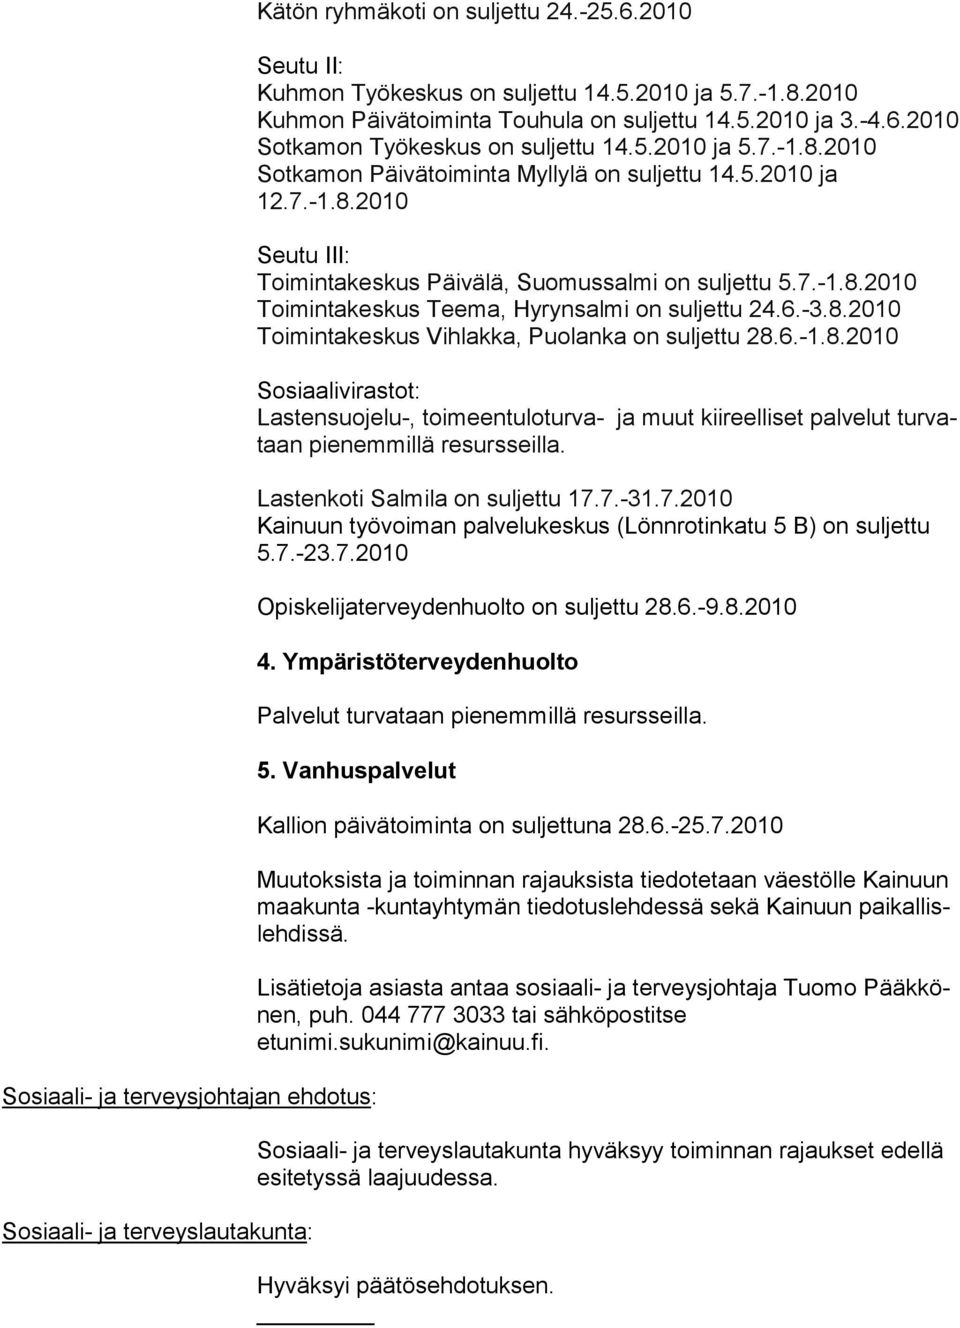 Lastenkoti Salmila on suljettu 17.7.-31.7.2010 Kainuun työvoiman pal velukeskus (Lönnro tinkatu 5 B) on suljettu 5.7.-23.7.2010 Opiskelijaterveydenhuolto on suljettu 28.6.-9.8.2010 4.